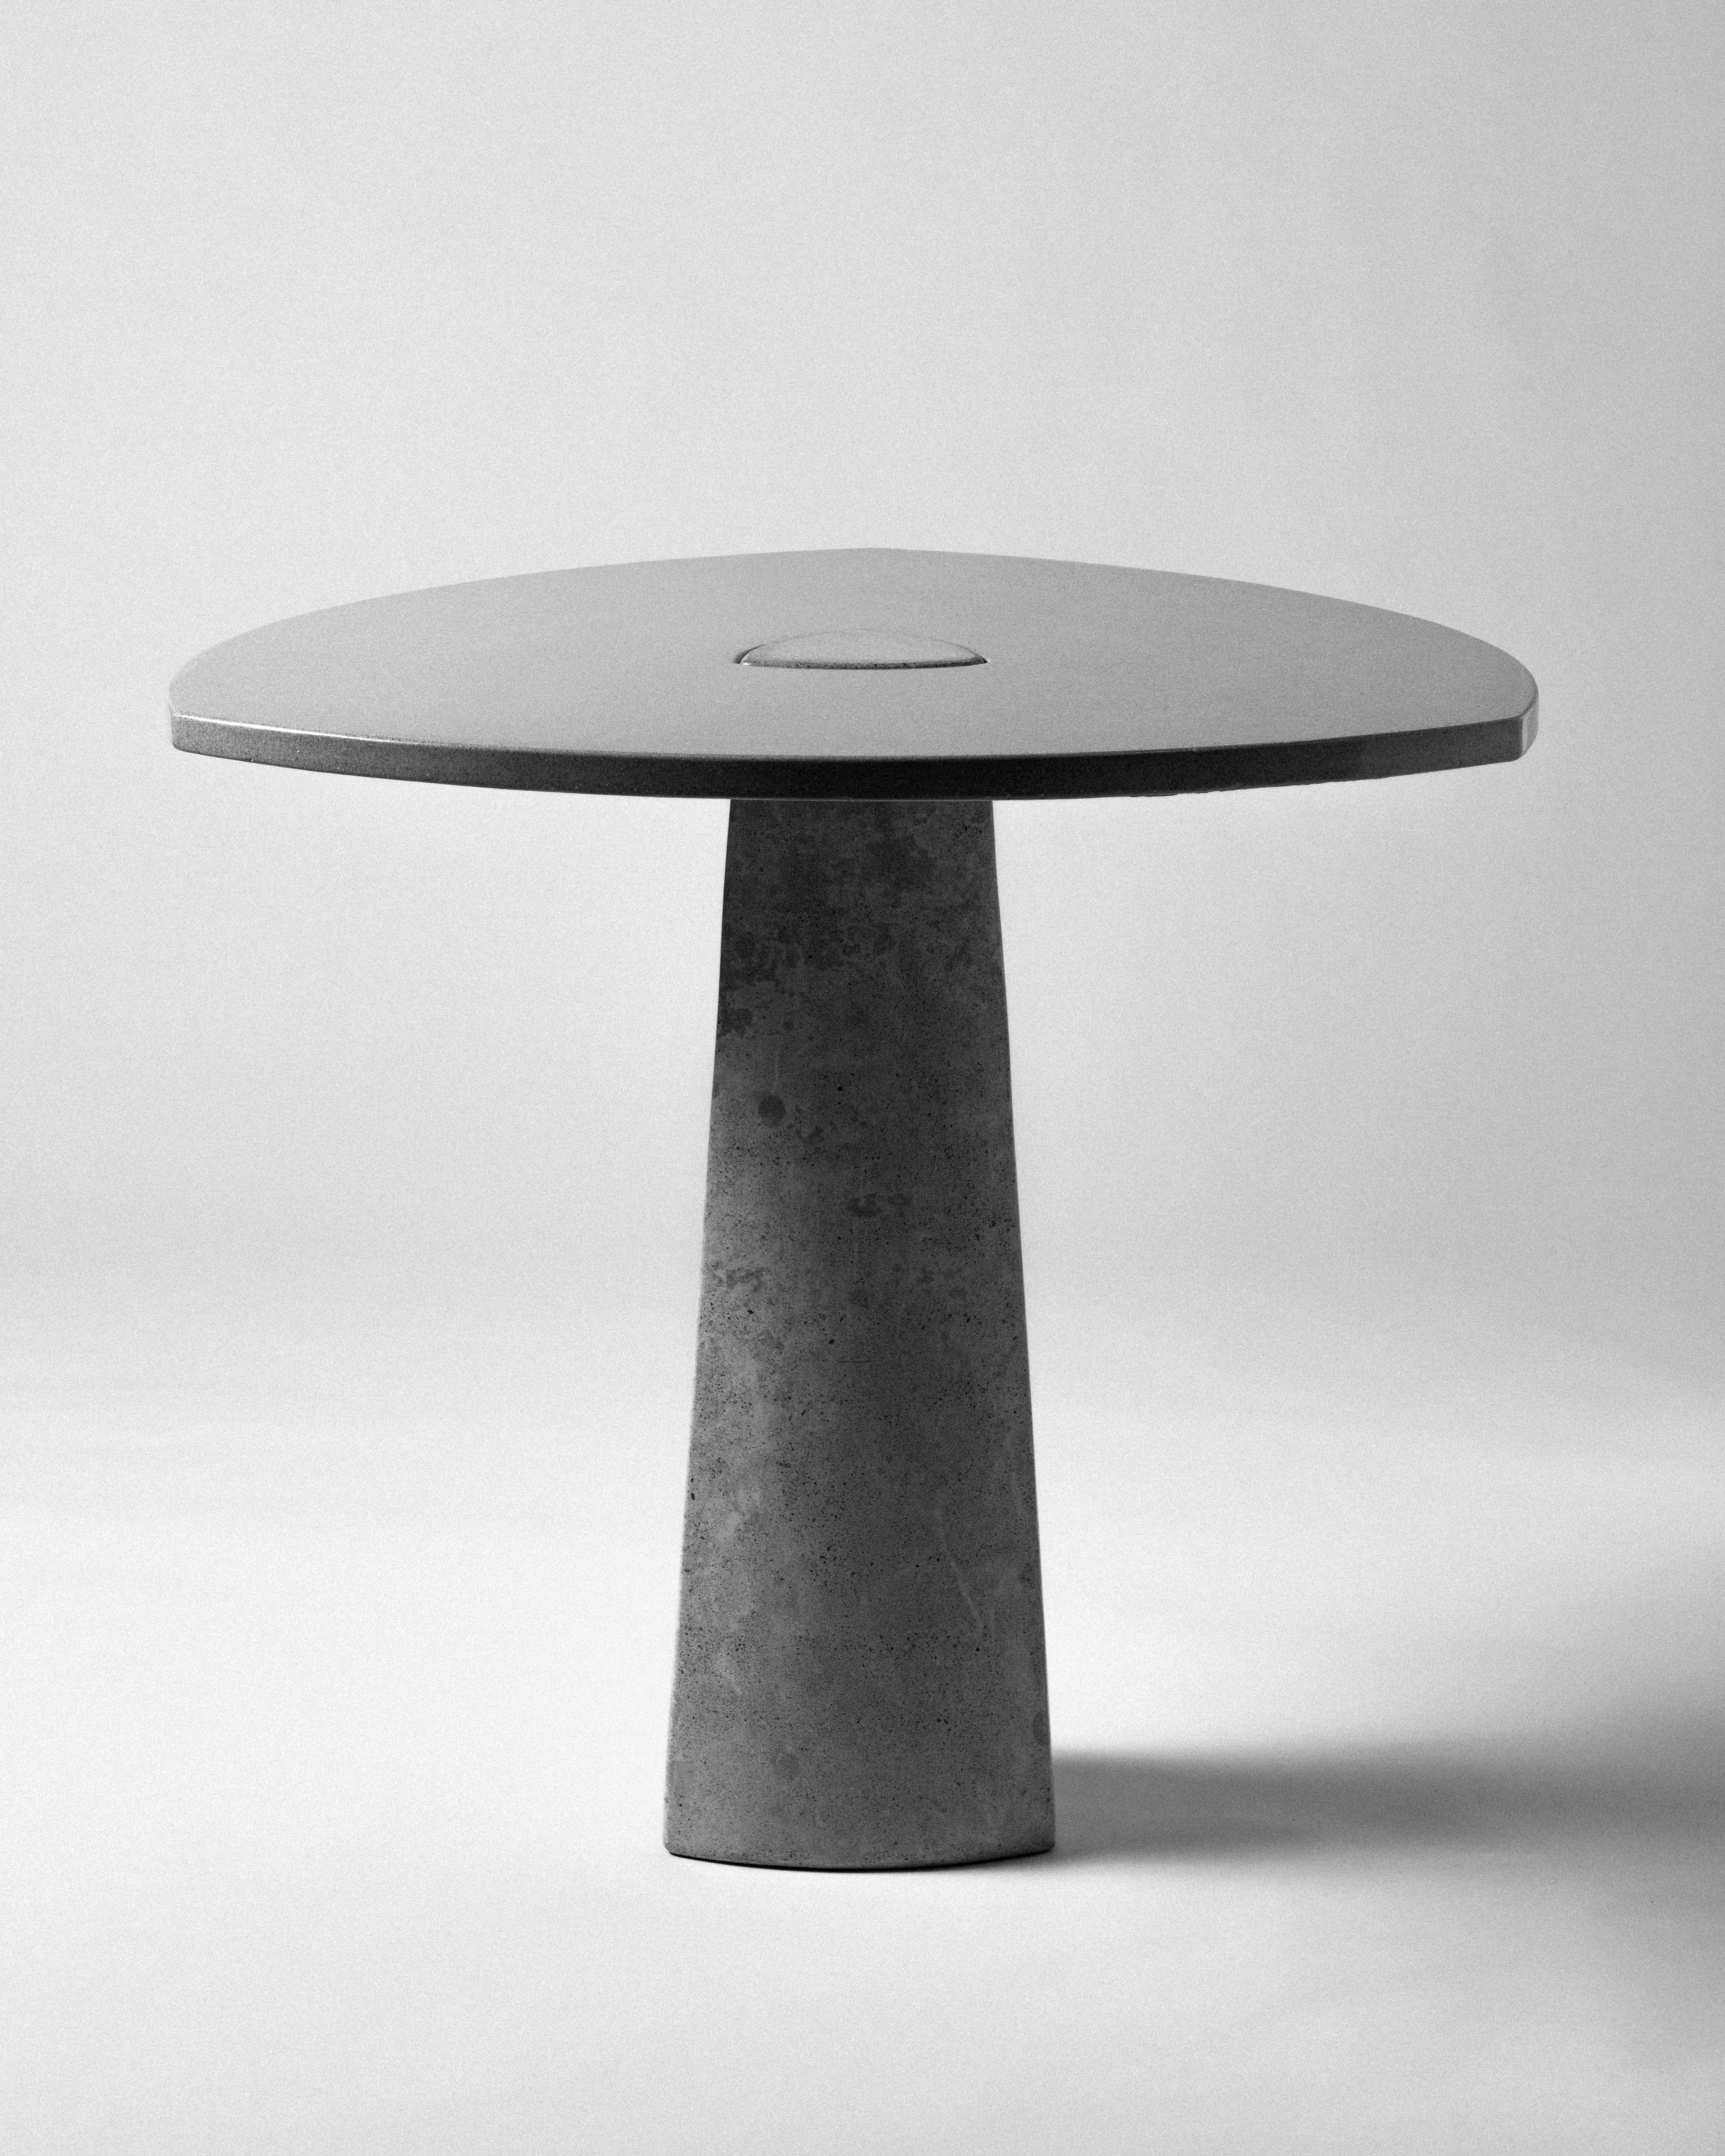 Unser Lieblingsfrühstückstisch. Der Klee-Tisch besteht aus zwei Teilen aus Beton - einer abgerundeten, dreieckigen Tischplatte und einem Sockel, die allein durch die Schwerkraft zusammengehalten werden. Der Tisch ist gleichermaßen Kunst und